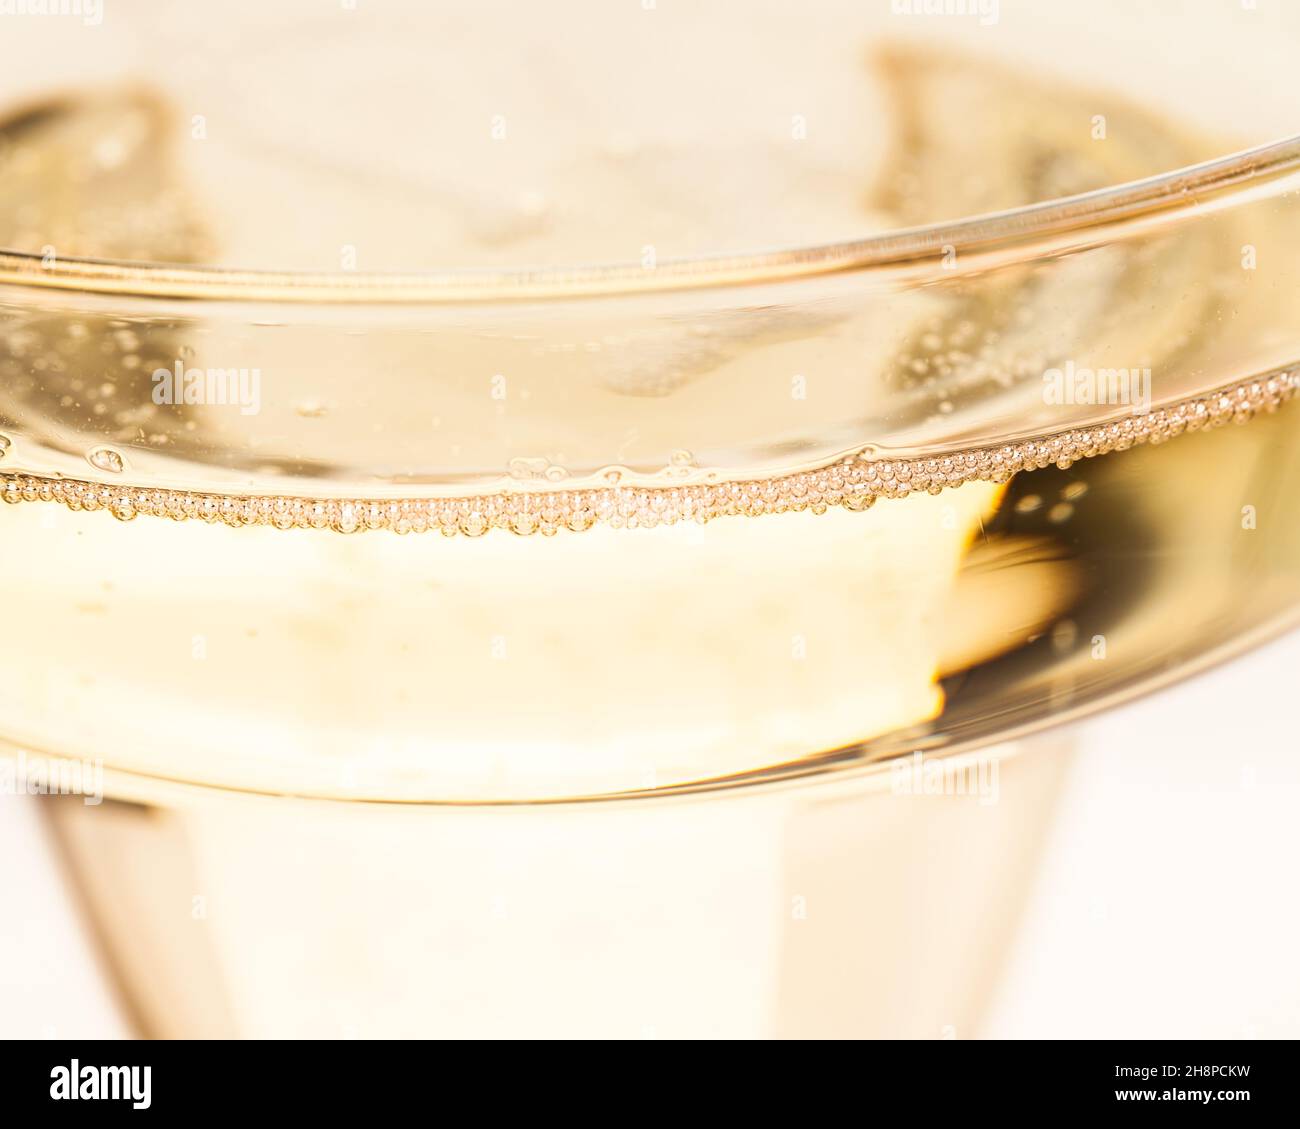 Dettaglio dal bordo di un bicchiere di champagne Champagne, champagne, bicchiere di champagne, bordo, bolle, dettaglio, salita, bolle Foto Stock